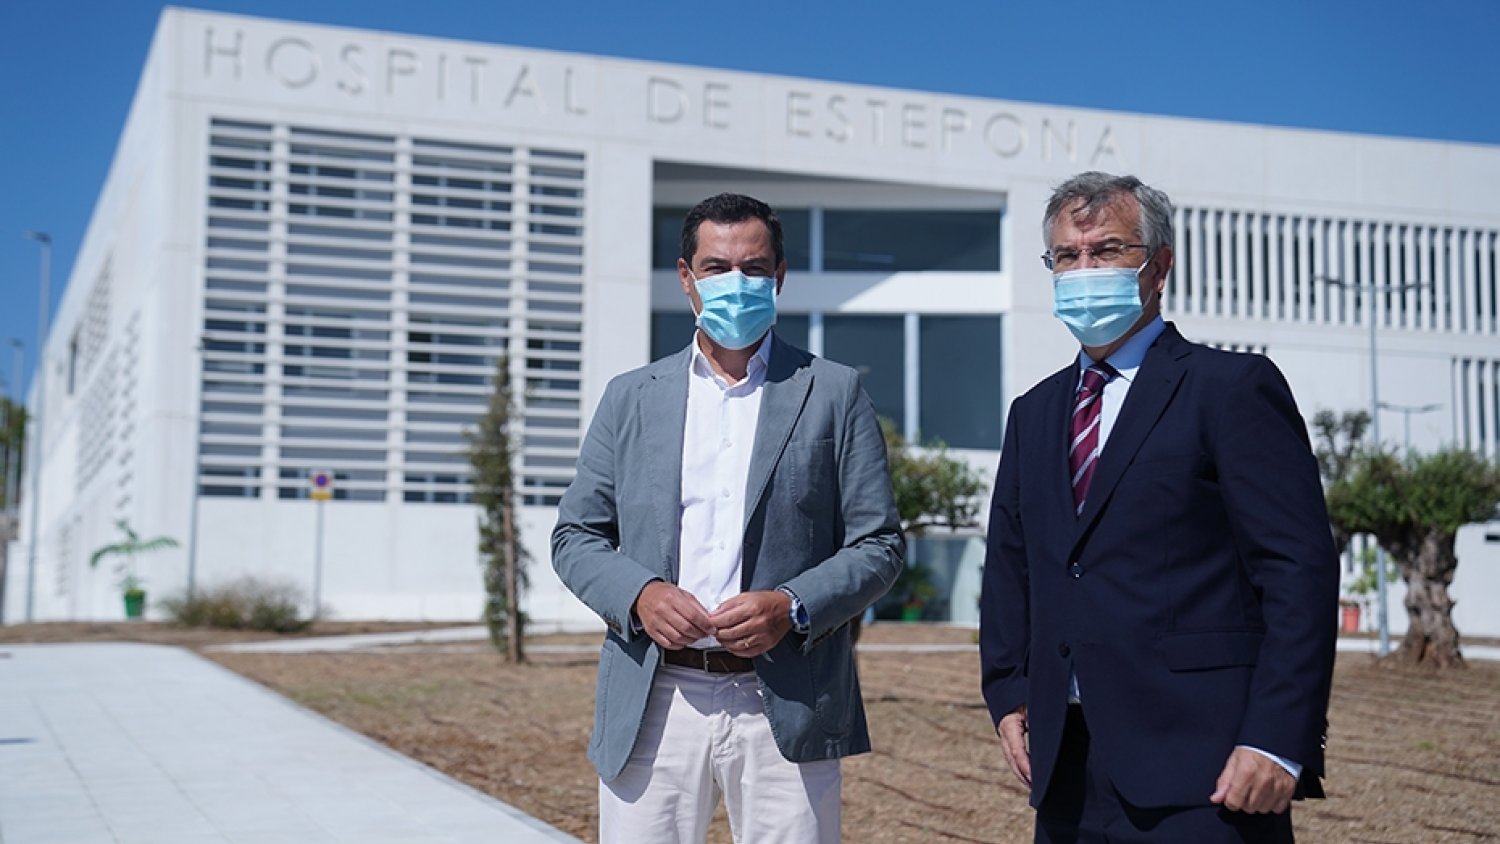 El BOJA publica la adscripción del Hospital de Estepona a la Agencia Sanitaria Costa del Sol